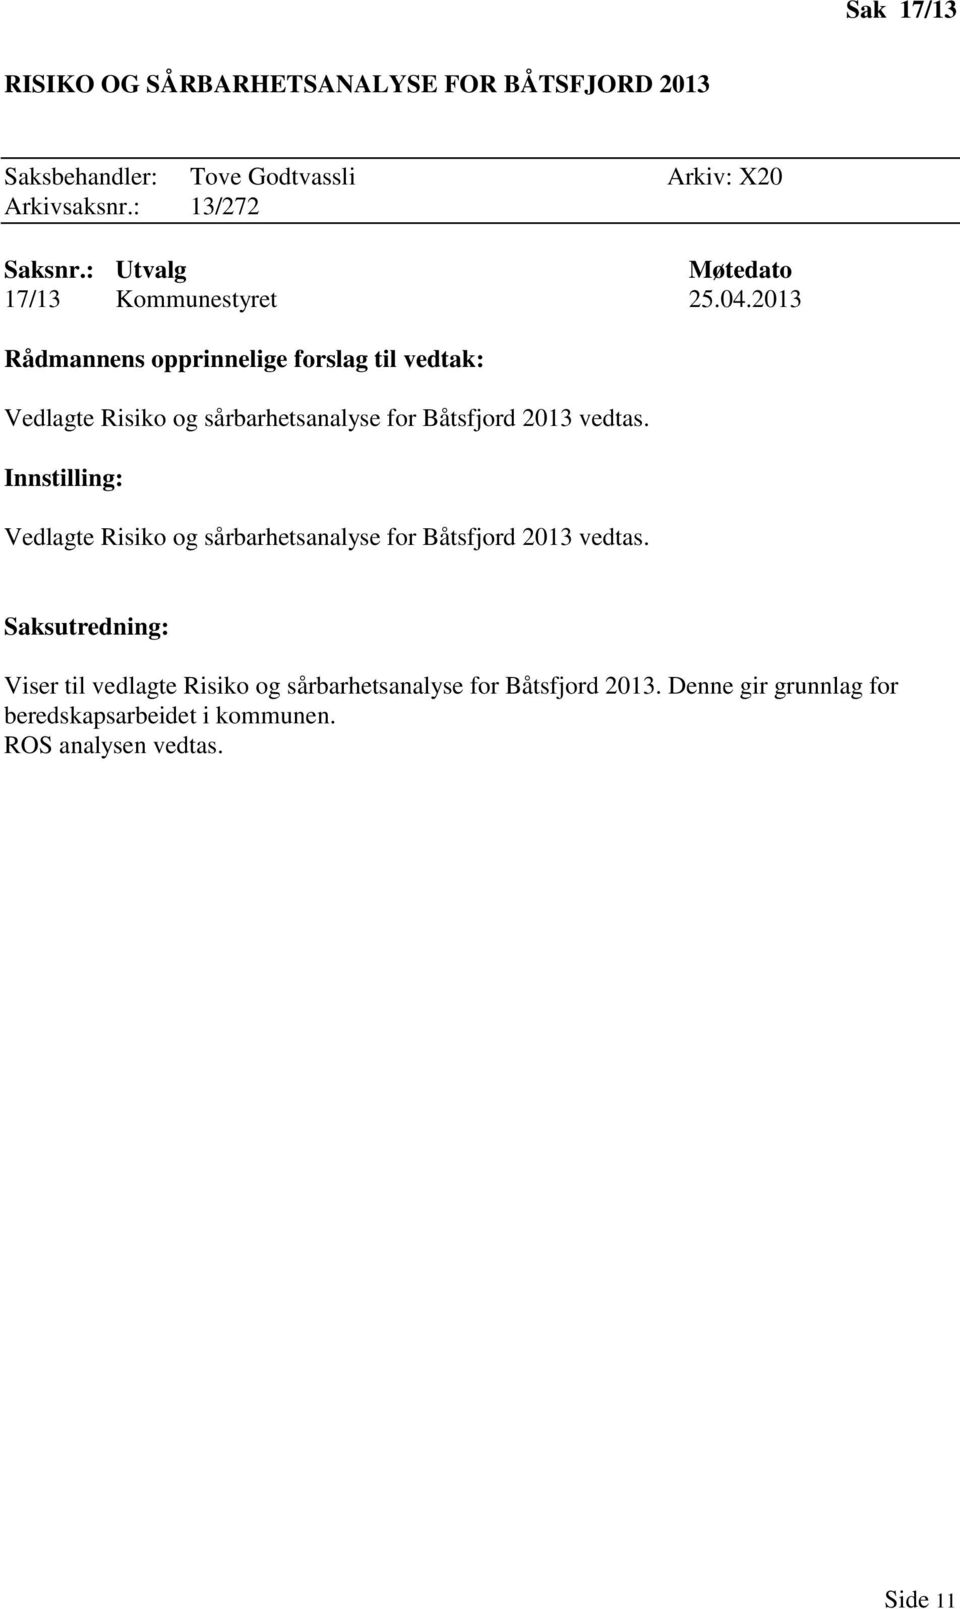 2013 Rådmannens opprinnelige forslag til vedtak: Vedlagte Risiko og sårbarhetsanalyse for Båtsfjord 2013 vedtas.